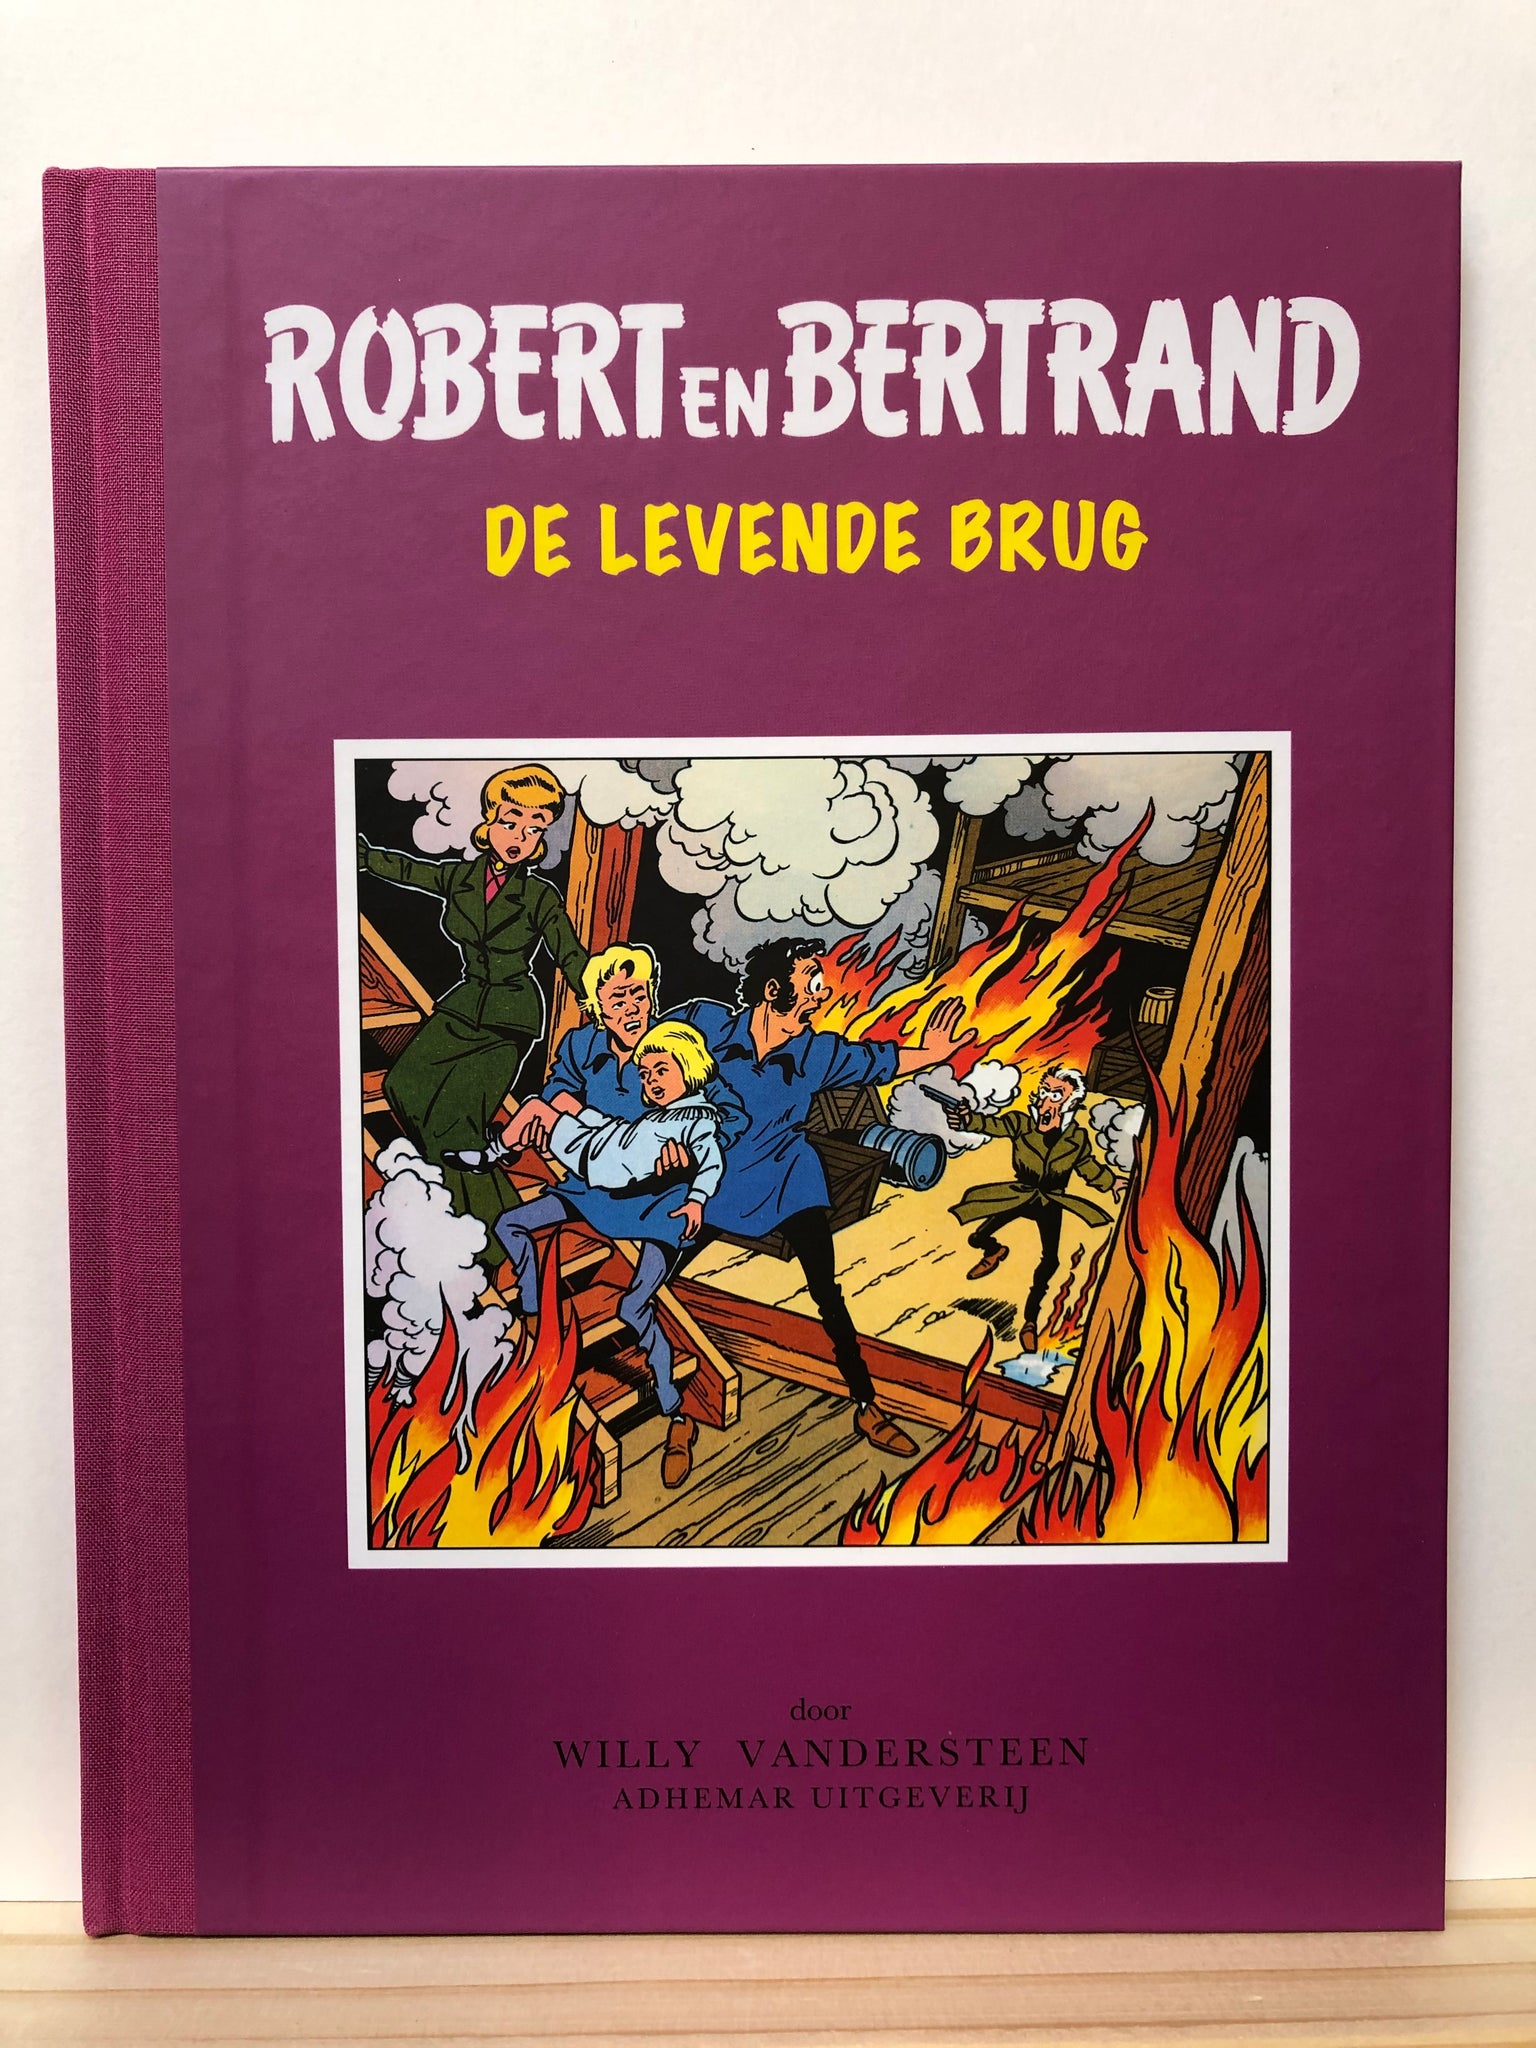 Robert en Bertrand - De levende brug